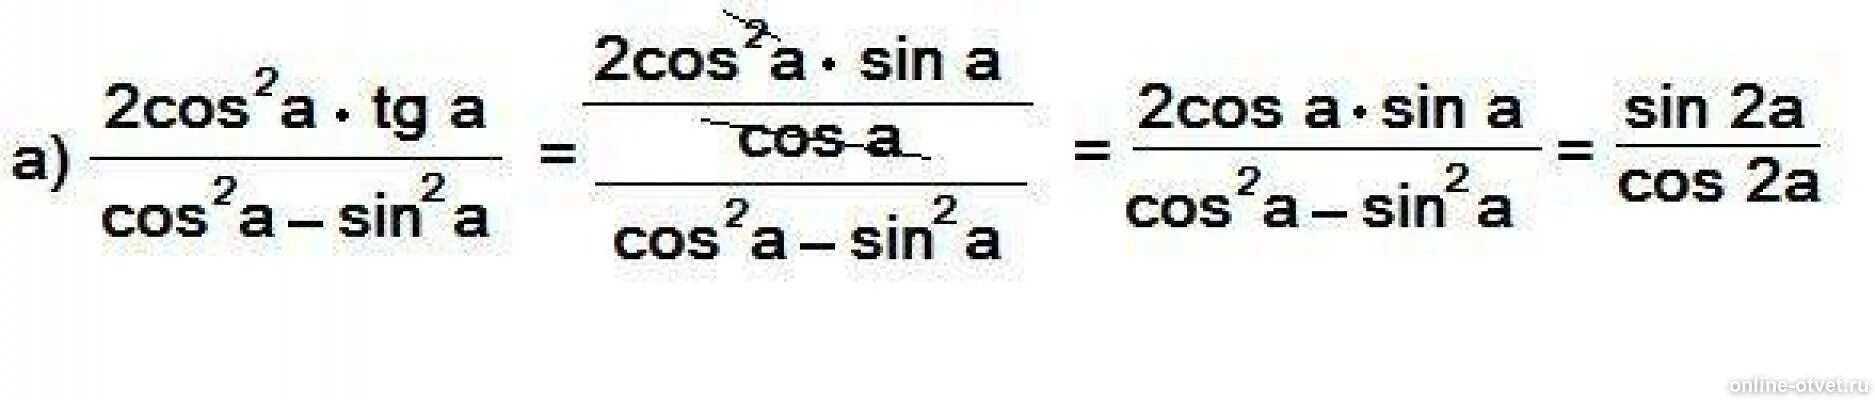 Cos a b cos a b упростить выражение. Упростить выражение sin b/cos b - sin b. Cos2a. 1-Cos2a формула. Bi cos